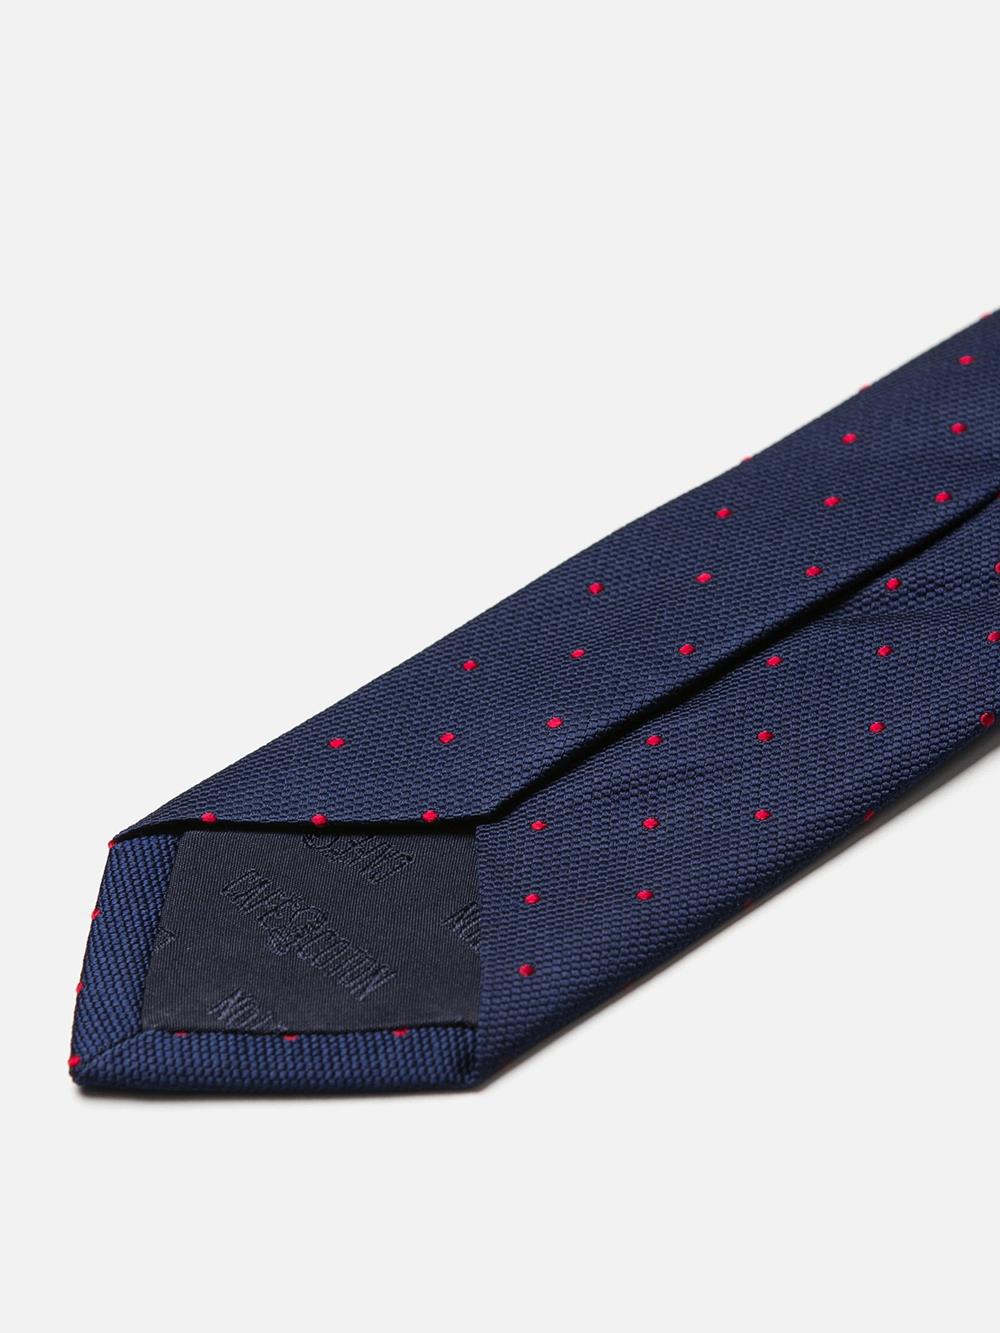 Slanke zijden stropdas met rode stippen